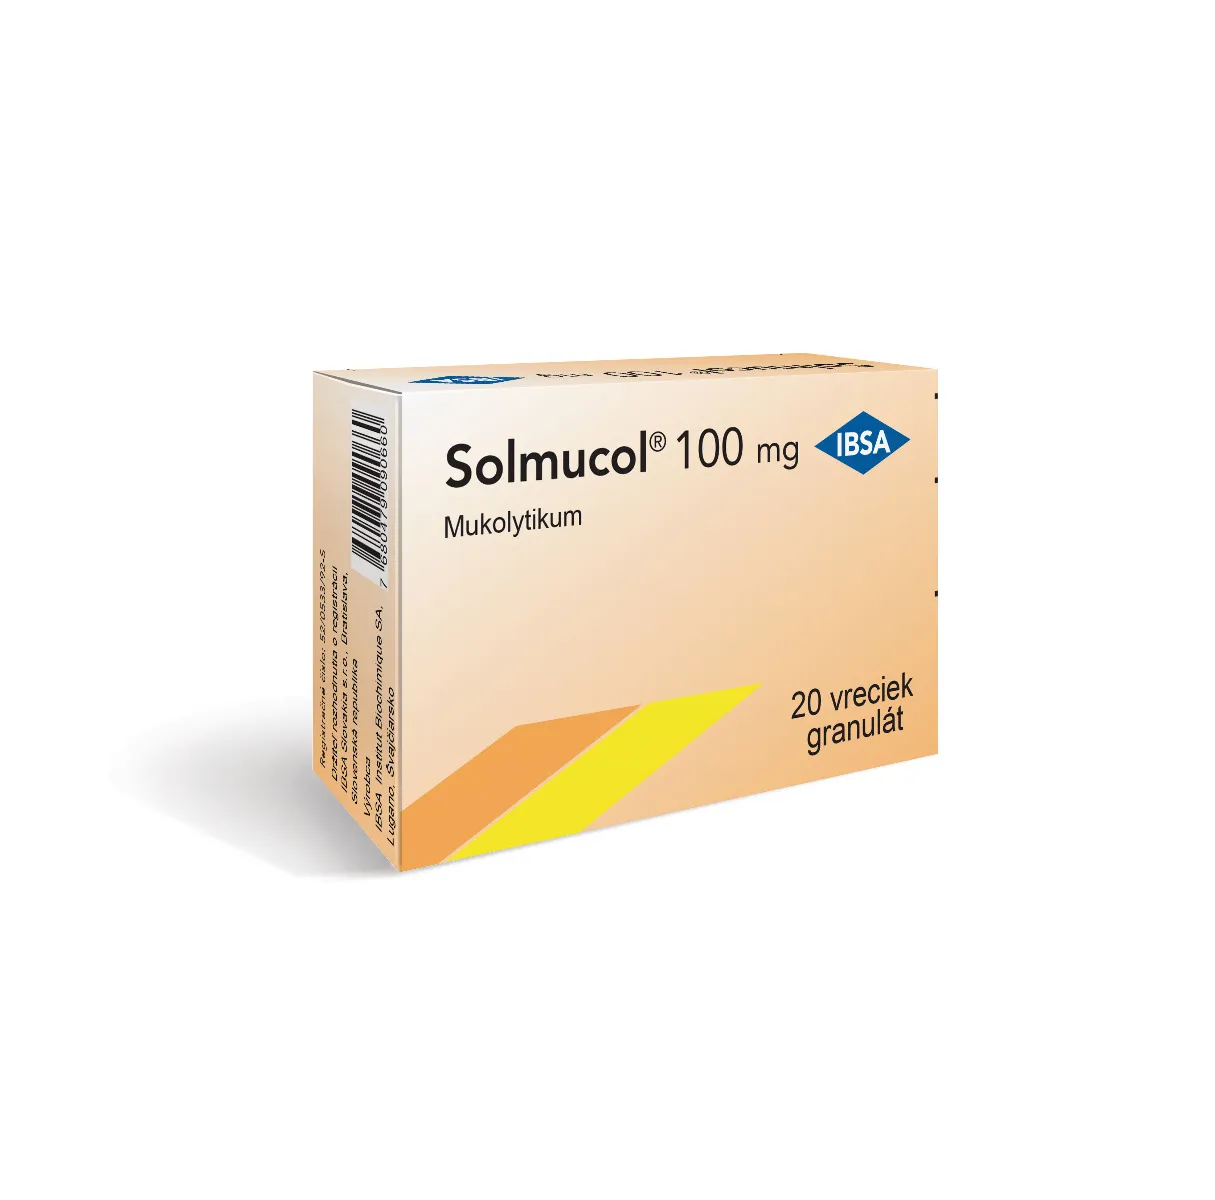 Solmucol 100 mg